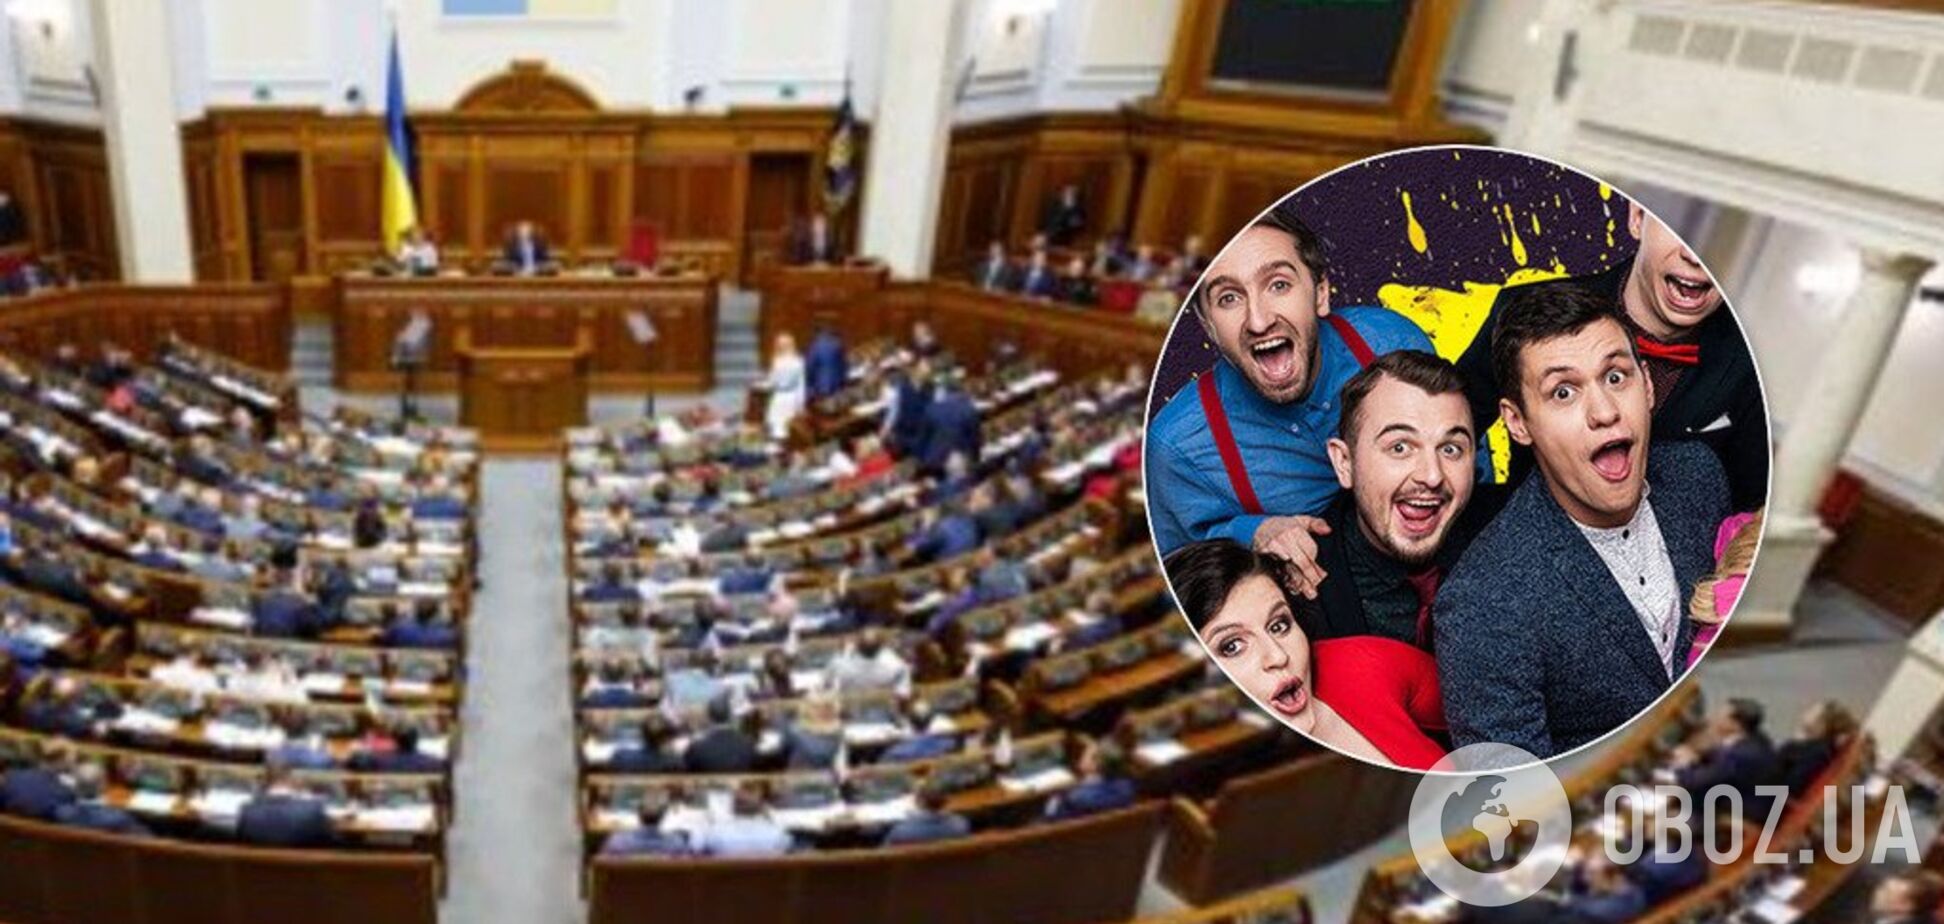 Ще один український комік іде у політику зі 'Слугою народу'